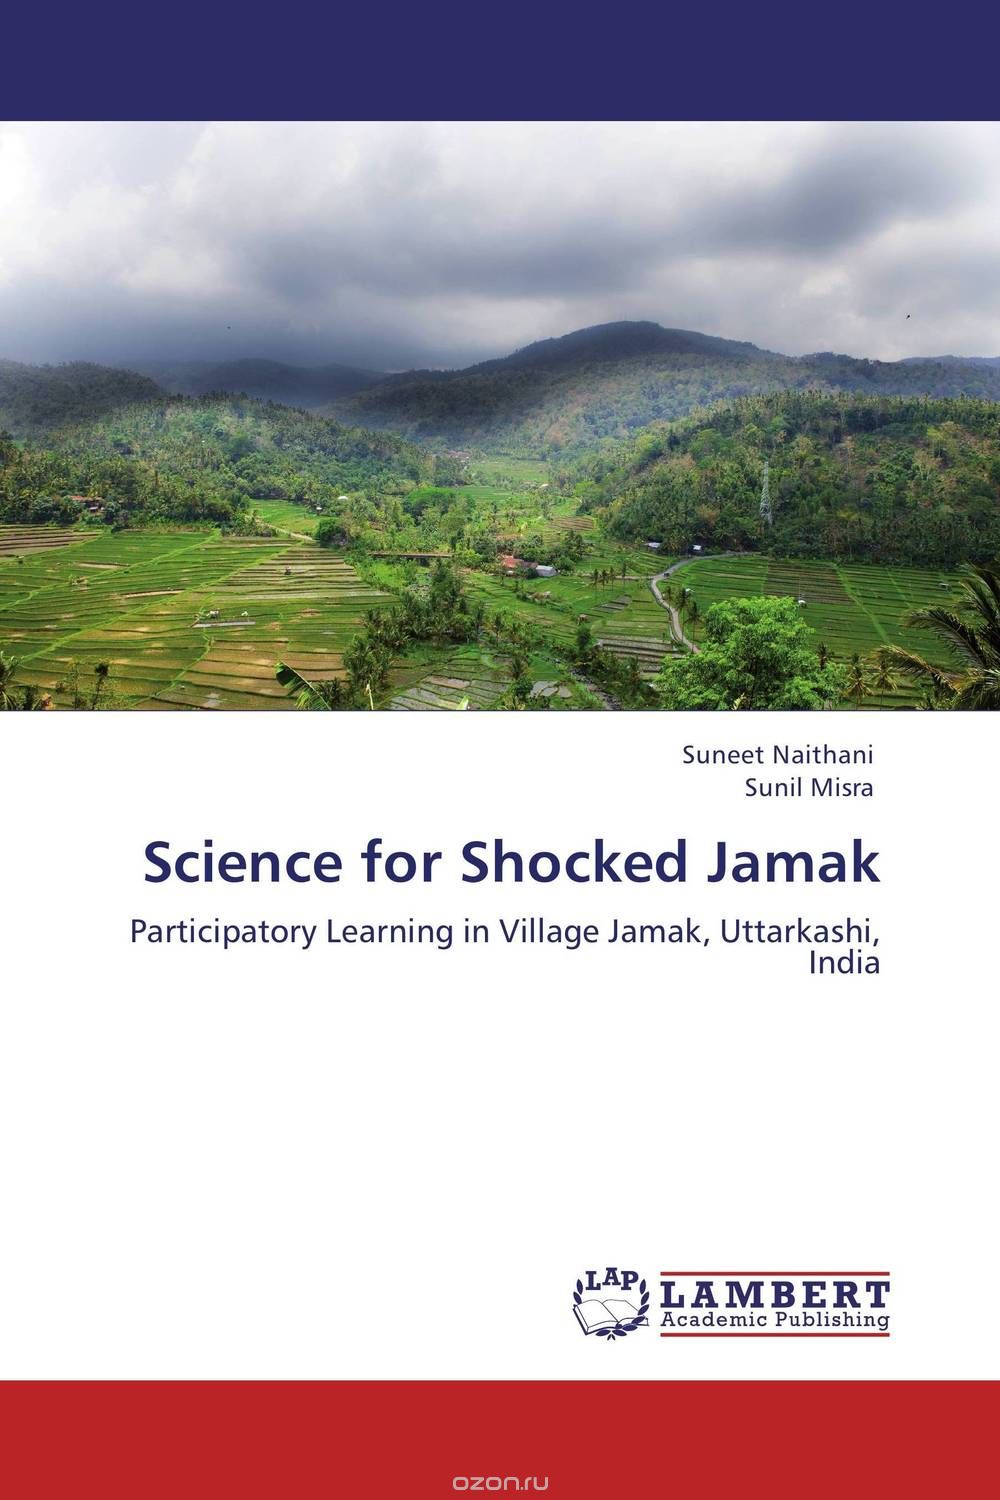 Скачать книгу "Science for Shocked Jamak"